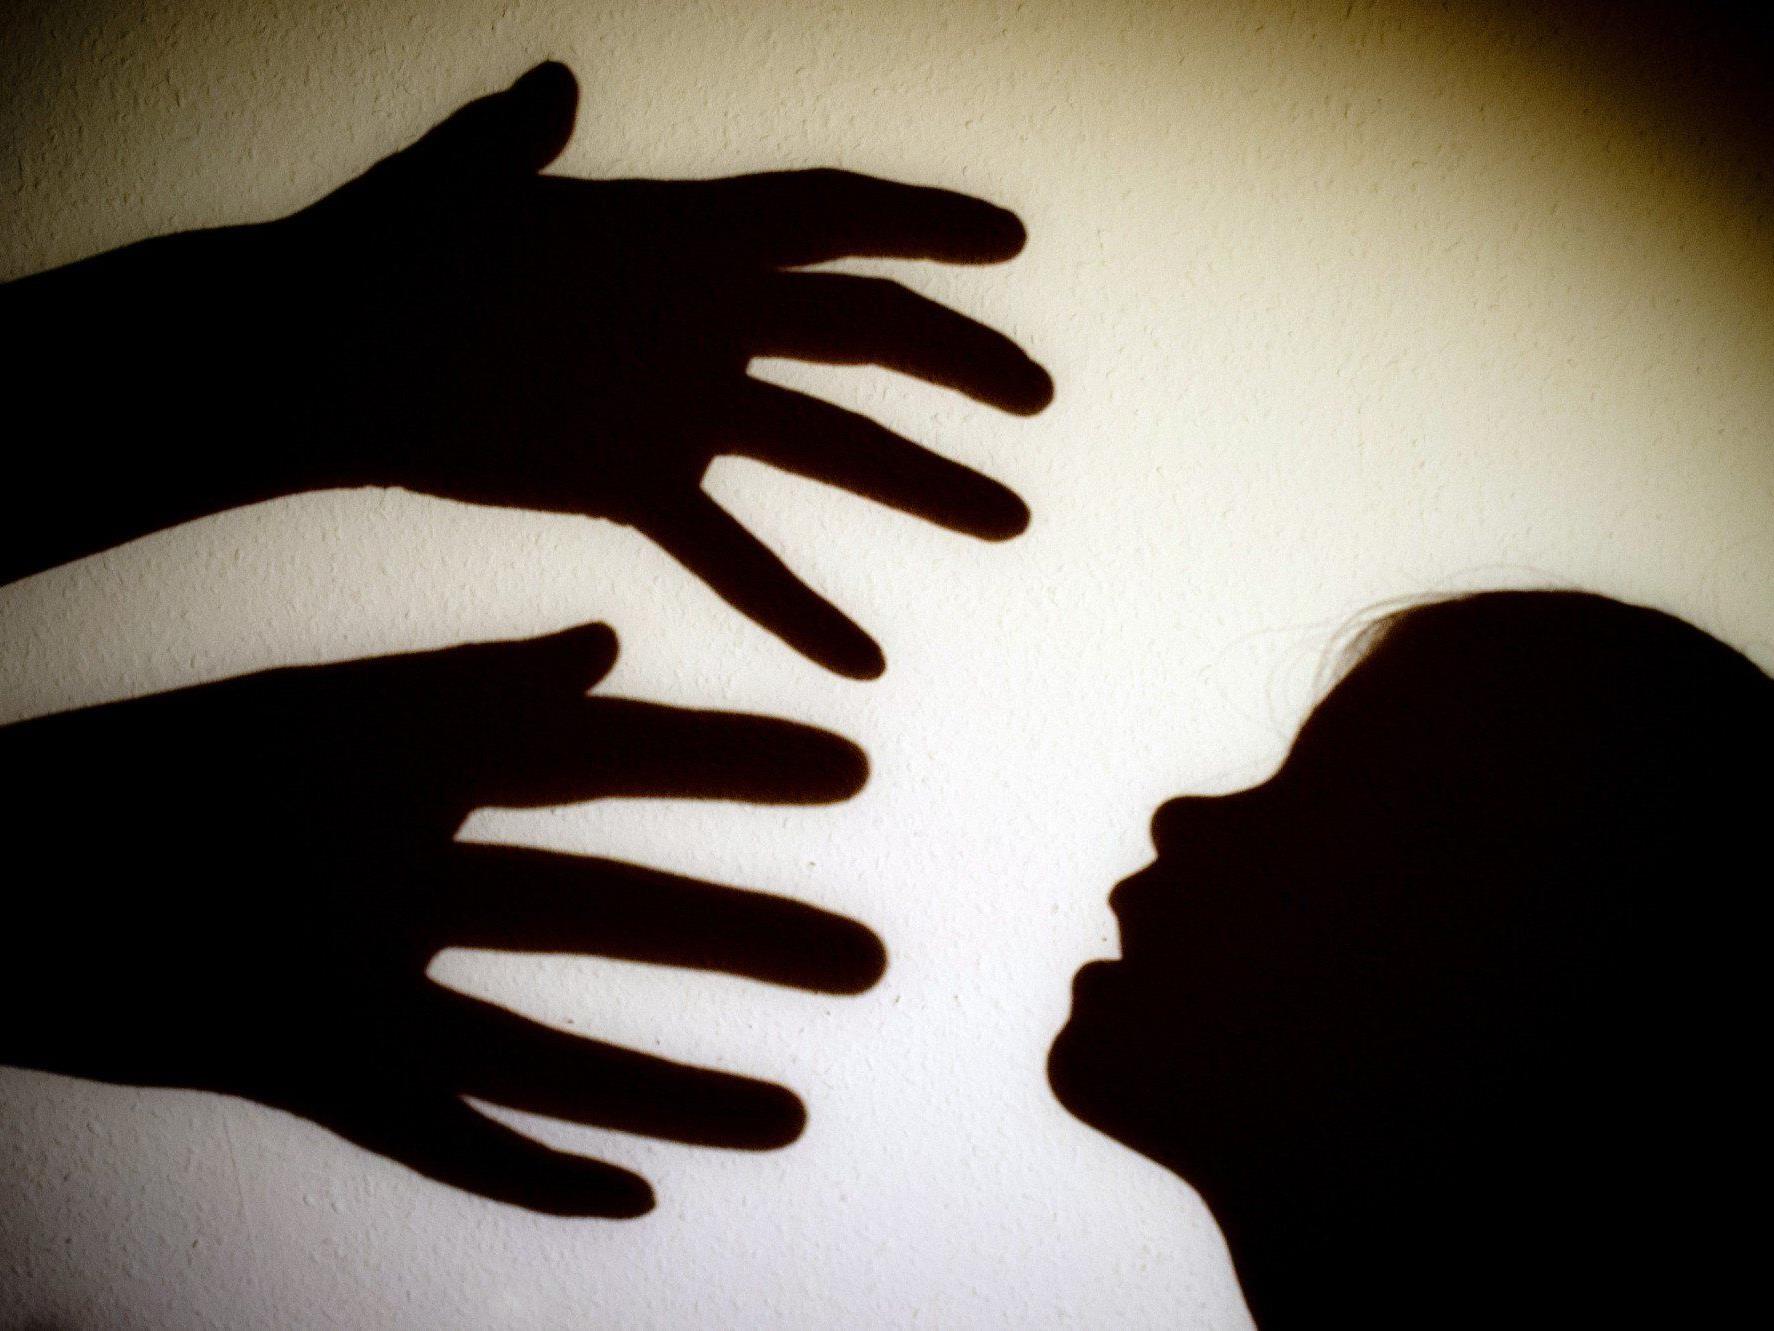 2013 waren in Vorarlberg 140 Minderjährige von häuslicher Gewalt betroffen.